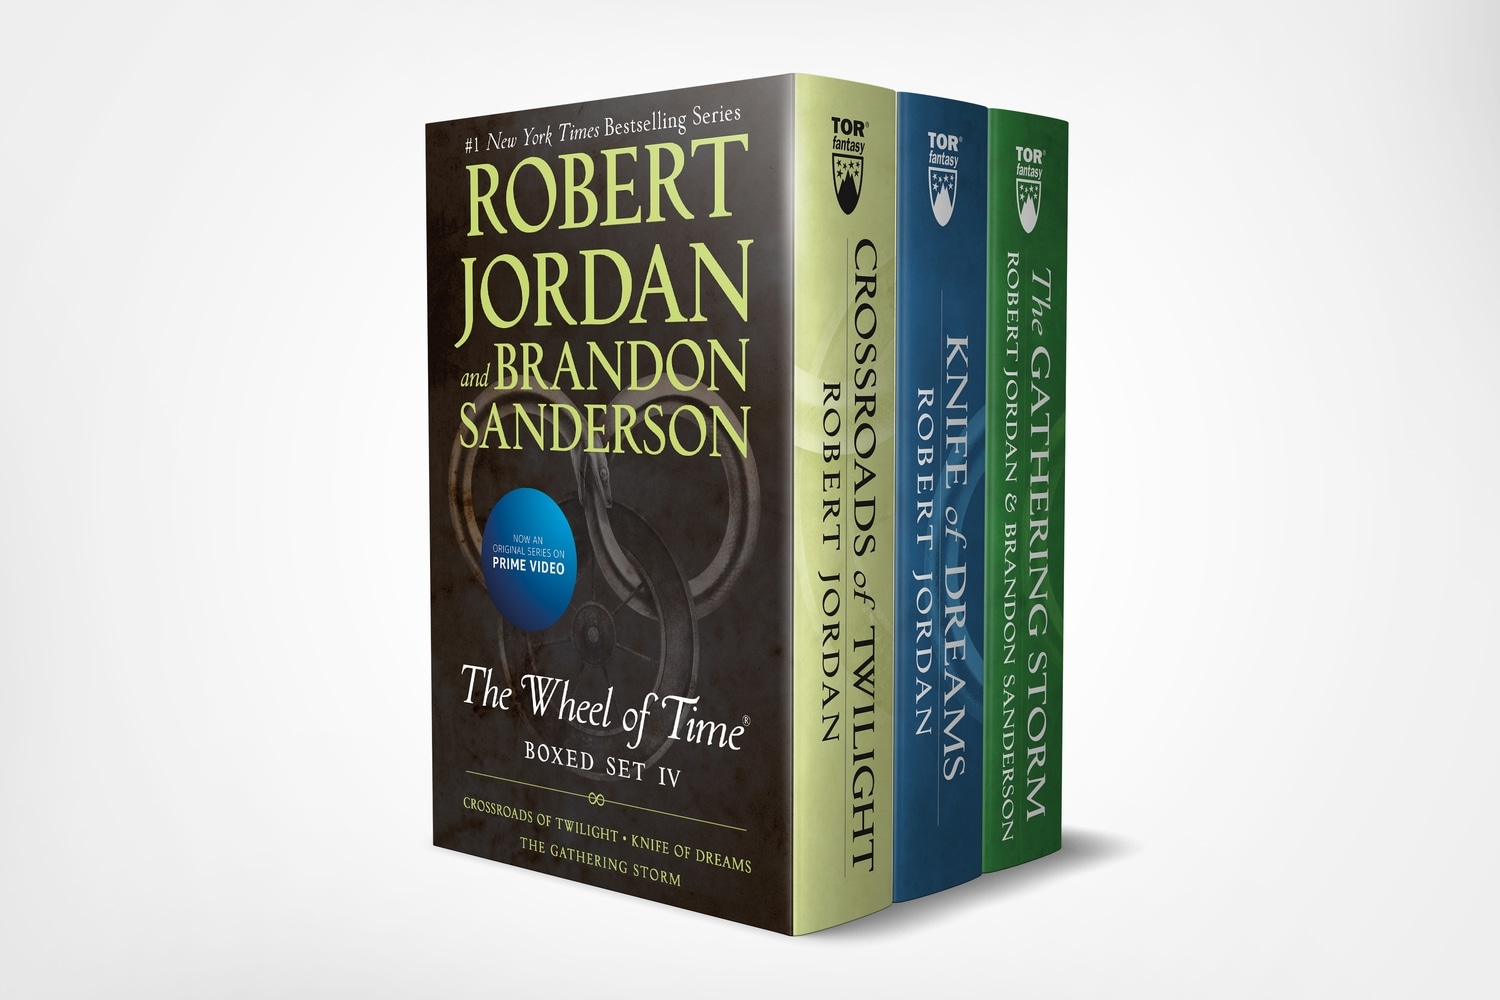 Book “Wheel of Time Premium Boxed Set IV” by Robert Jordan — April 28, 2020